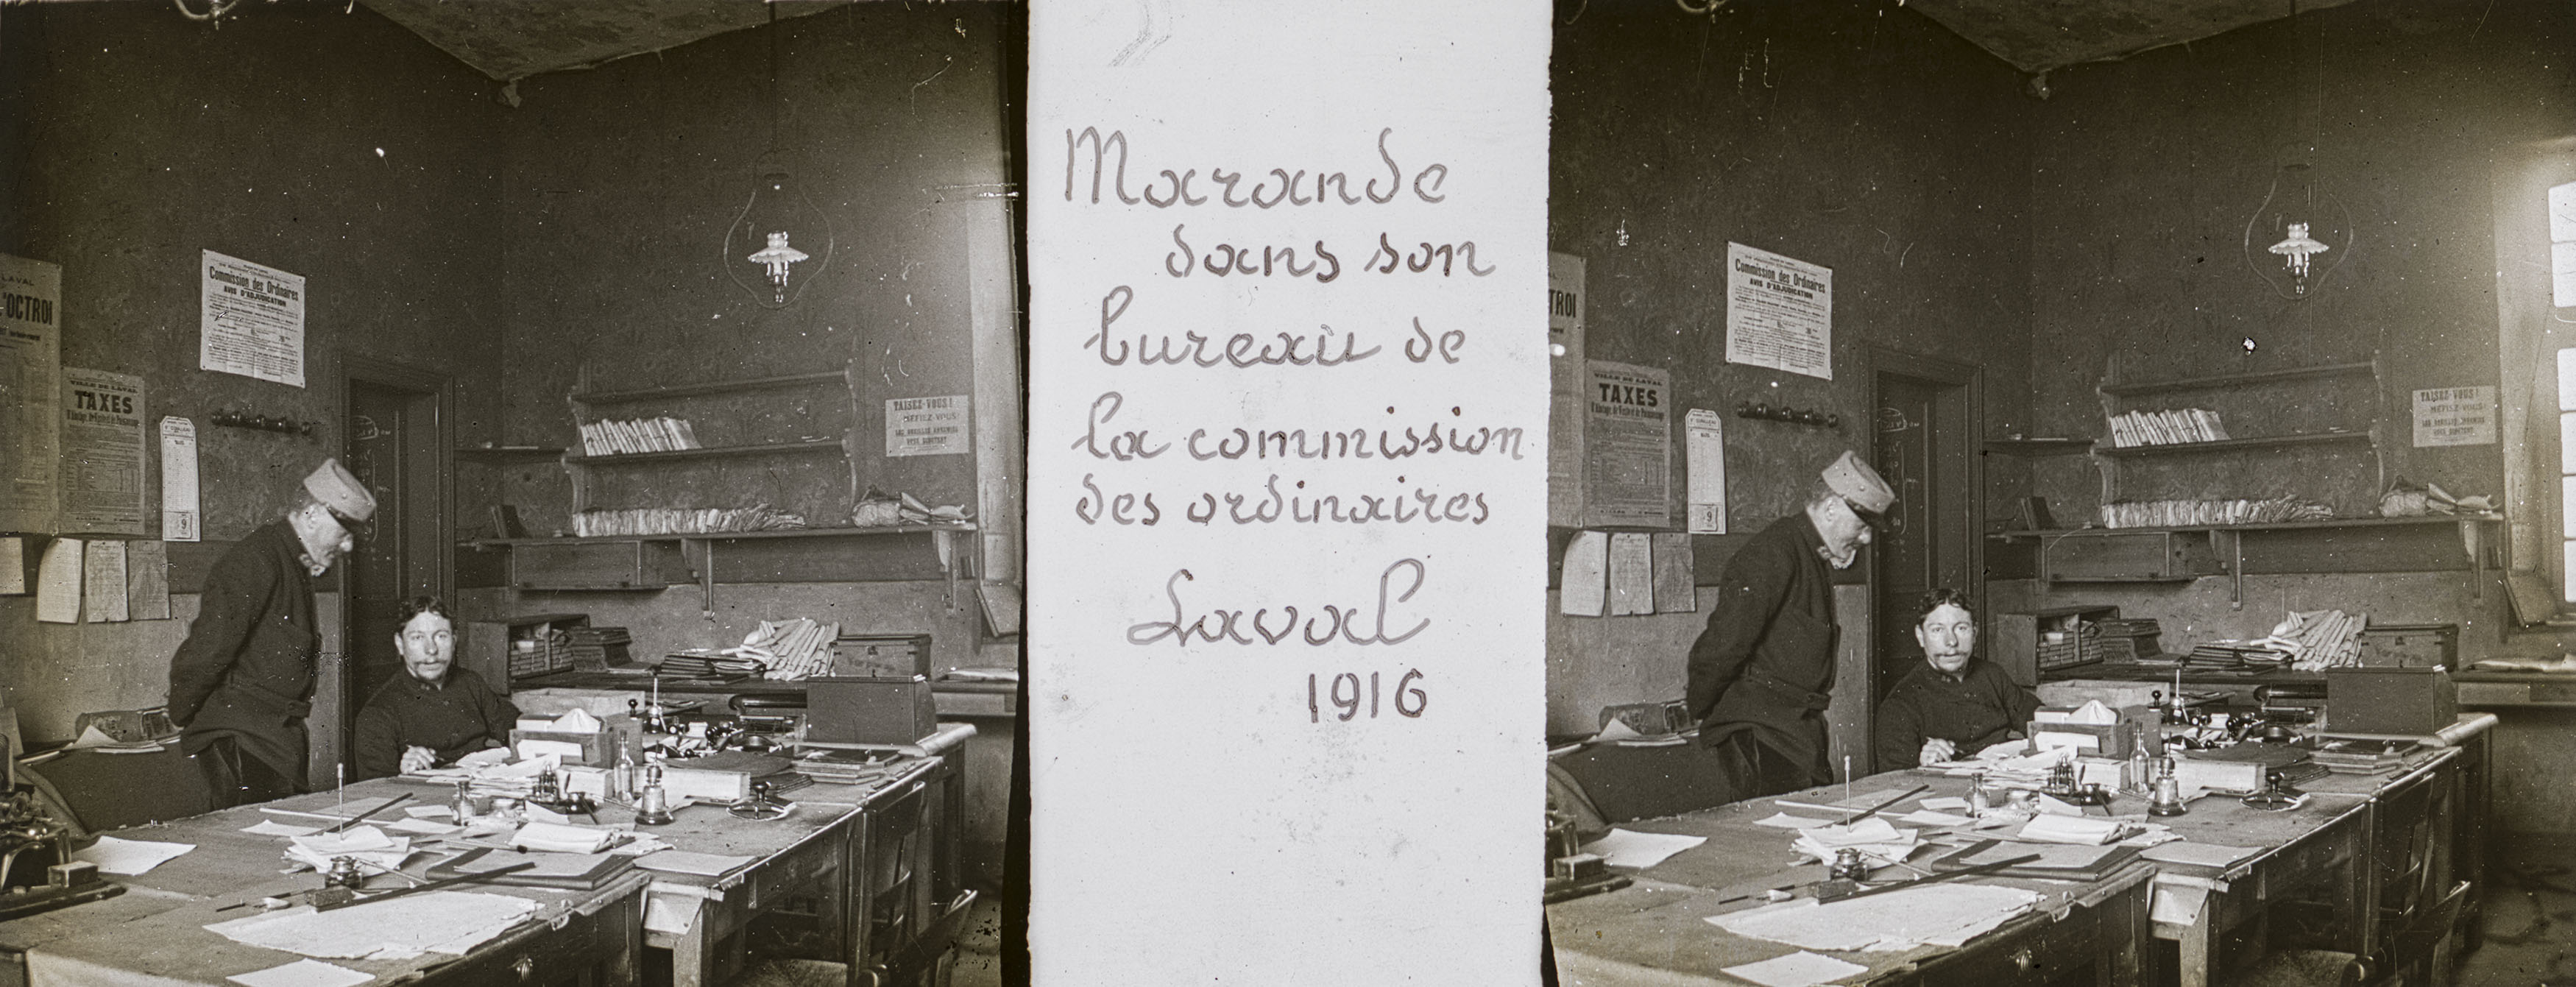 Marande dans son bureau de la commission des ordinaires - (soldier's name) in the general office